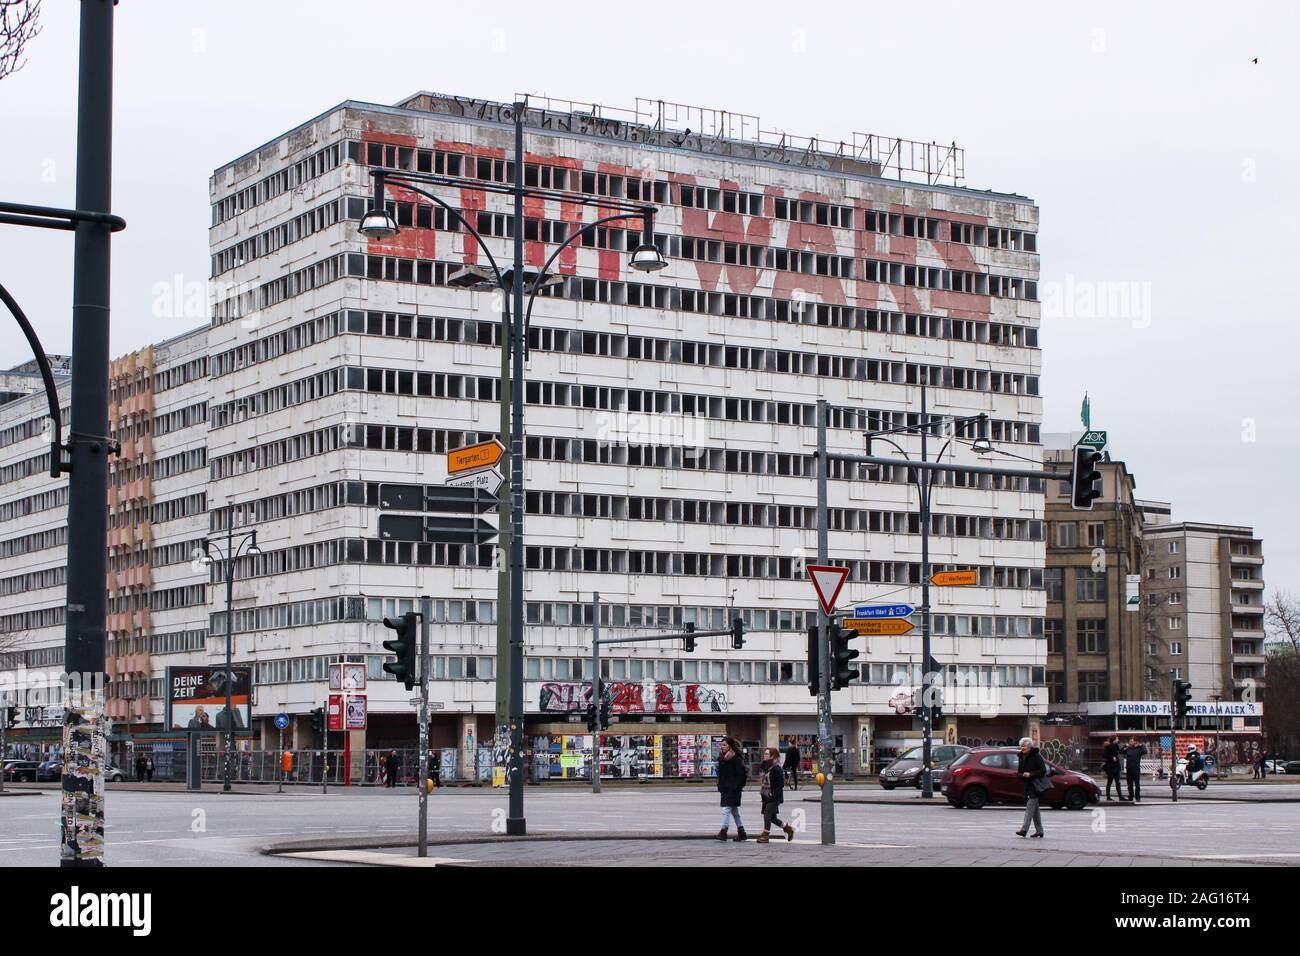 Arrêter les guerres - l'écriture sur l'abandon de l'ère DDR office building Haus der Statistik par l'Alexanderplatz à Berlin, Allemagne Banque D'Images